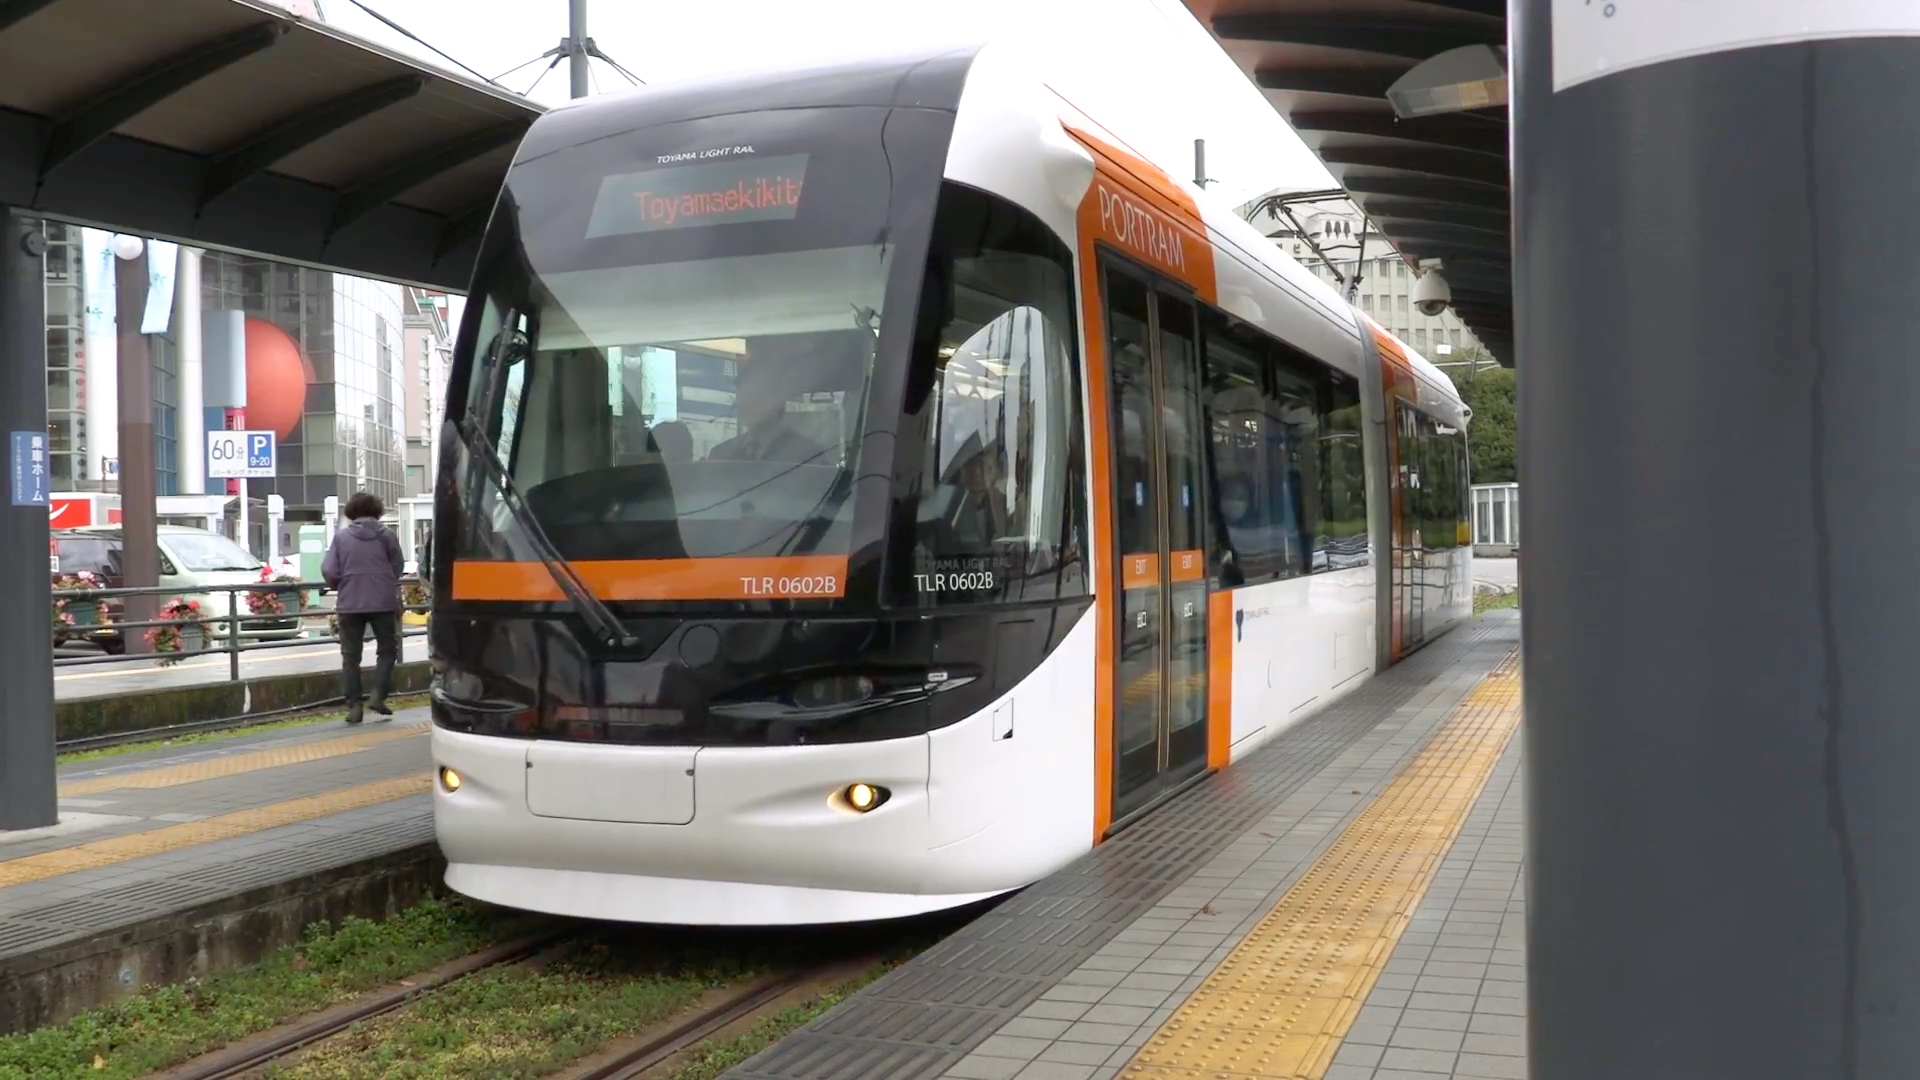 Herzstück der "Compact City": Toyama investiert viel in die Strassenbahn.